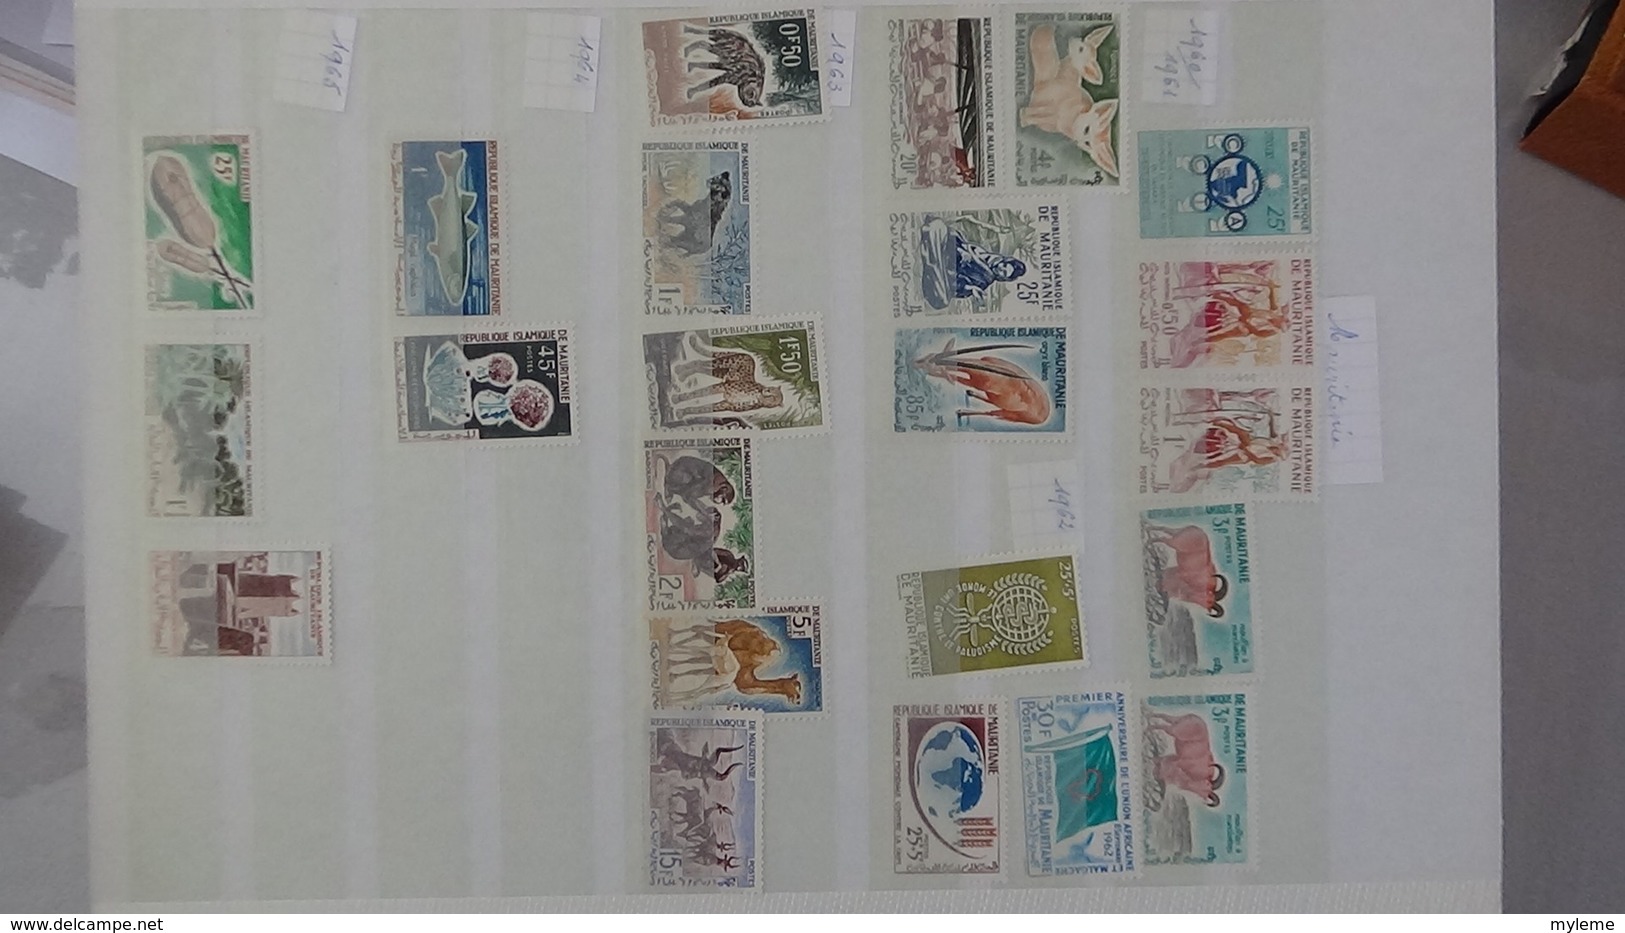 D17 Dispersion d'une très grosse collection de timbres et blocs ** dont Mali,Maroc, Mauritanie. Voir commentair